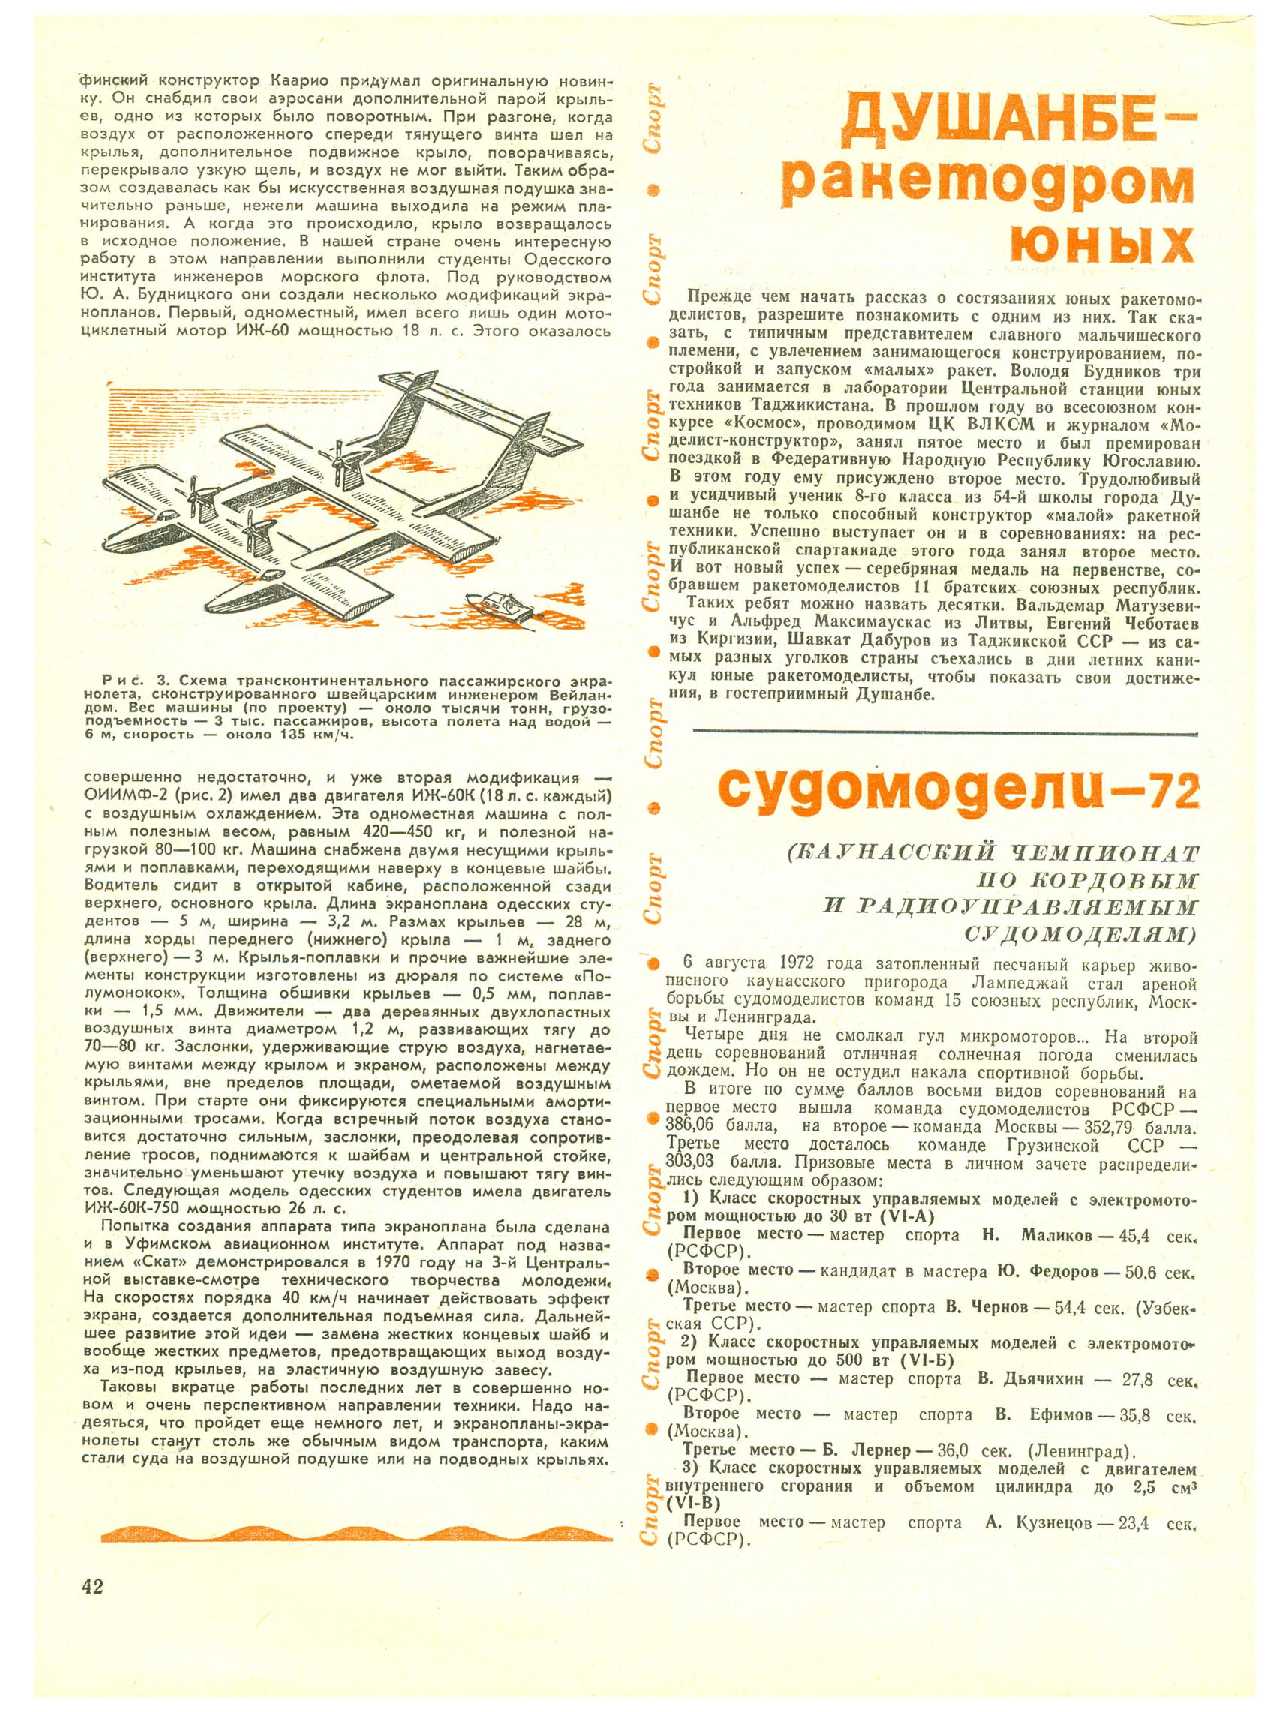 МК 12, 1972, 42 c.